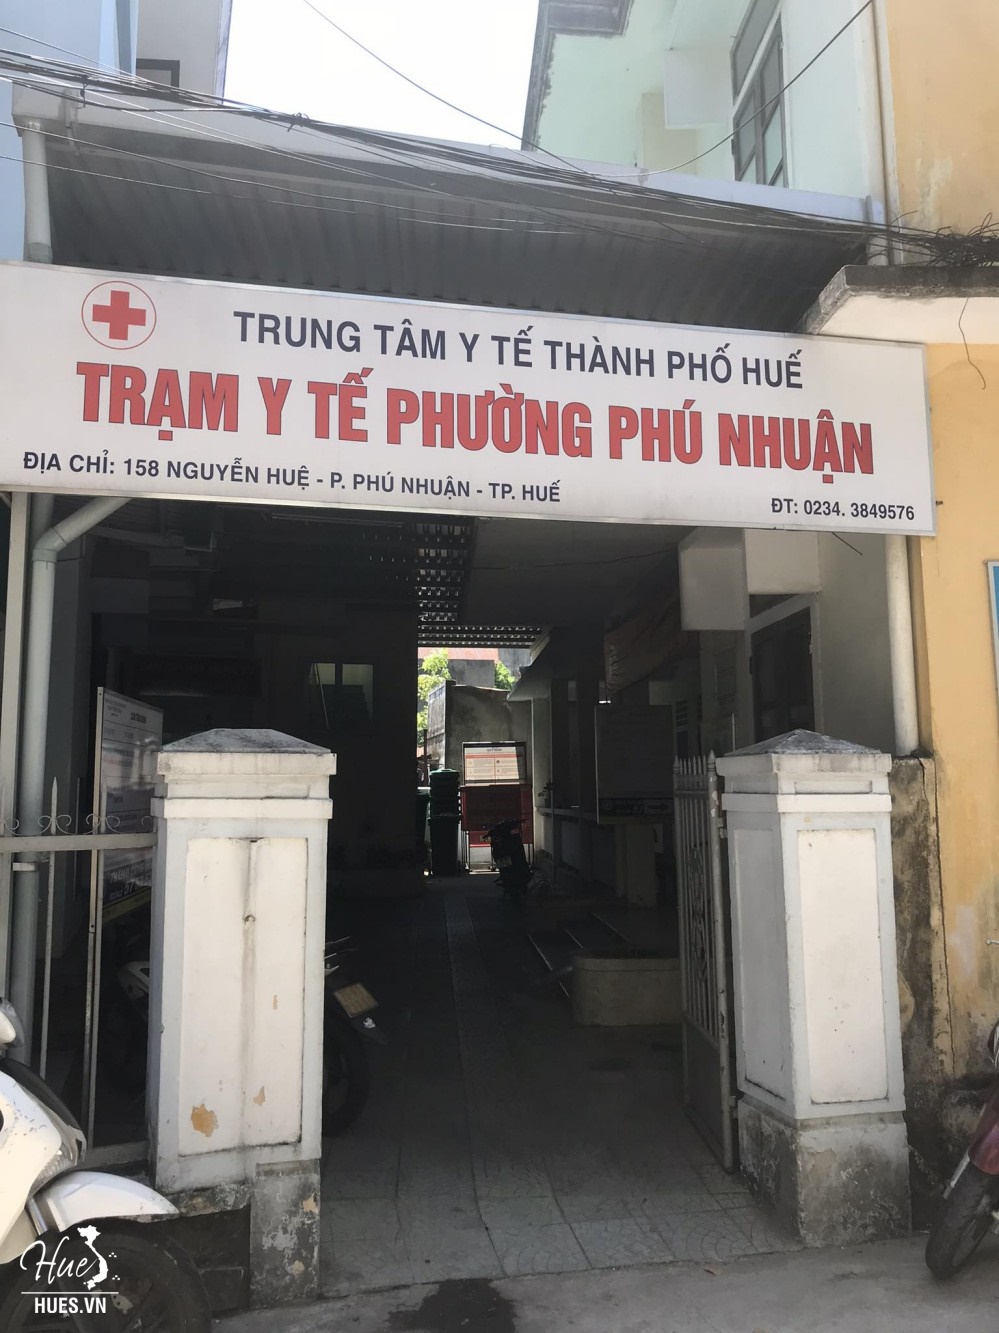 Trạm y tế phường Phú Nhuận